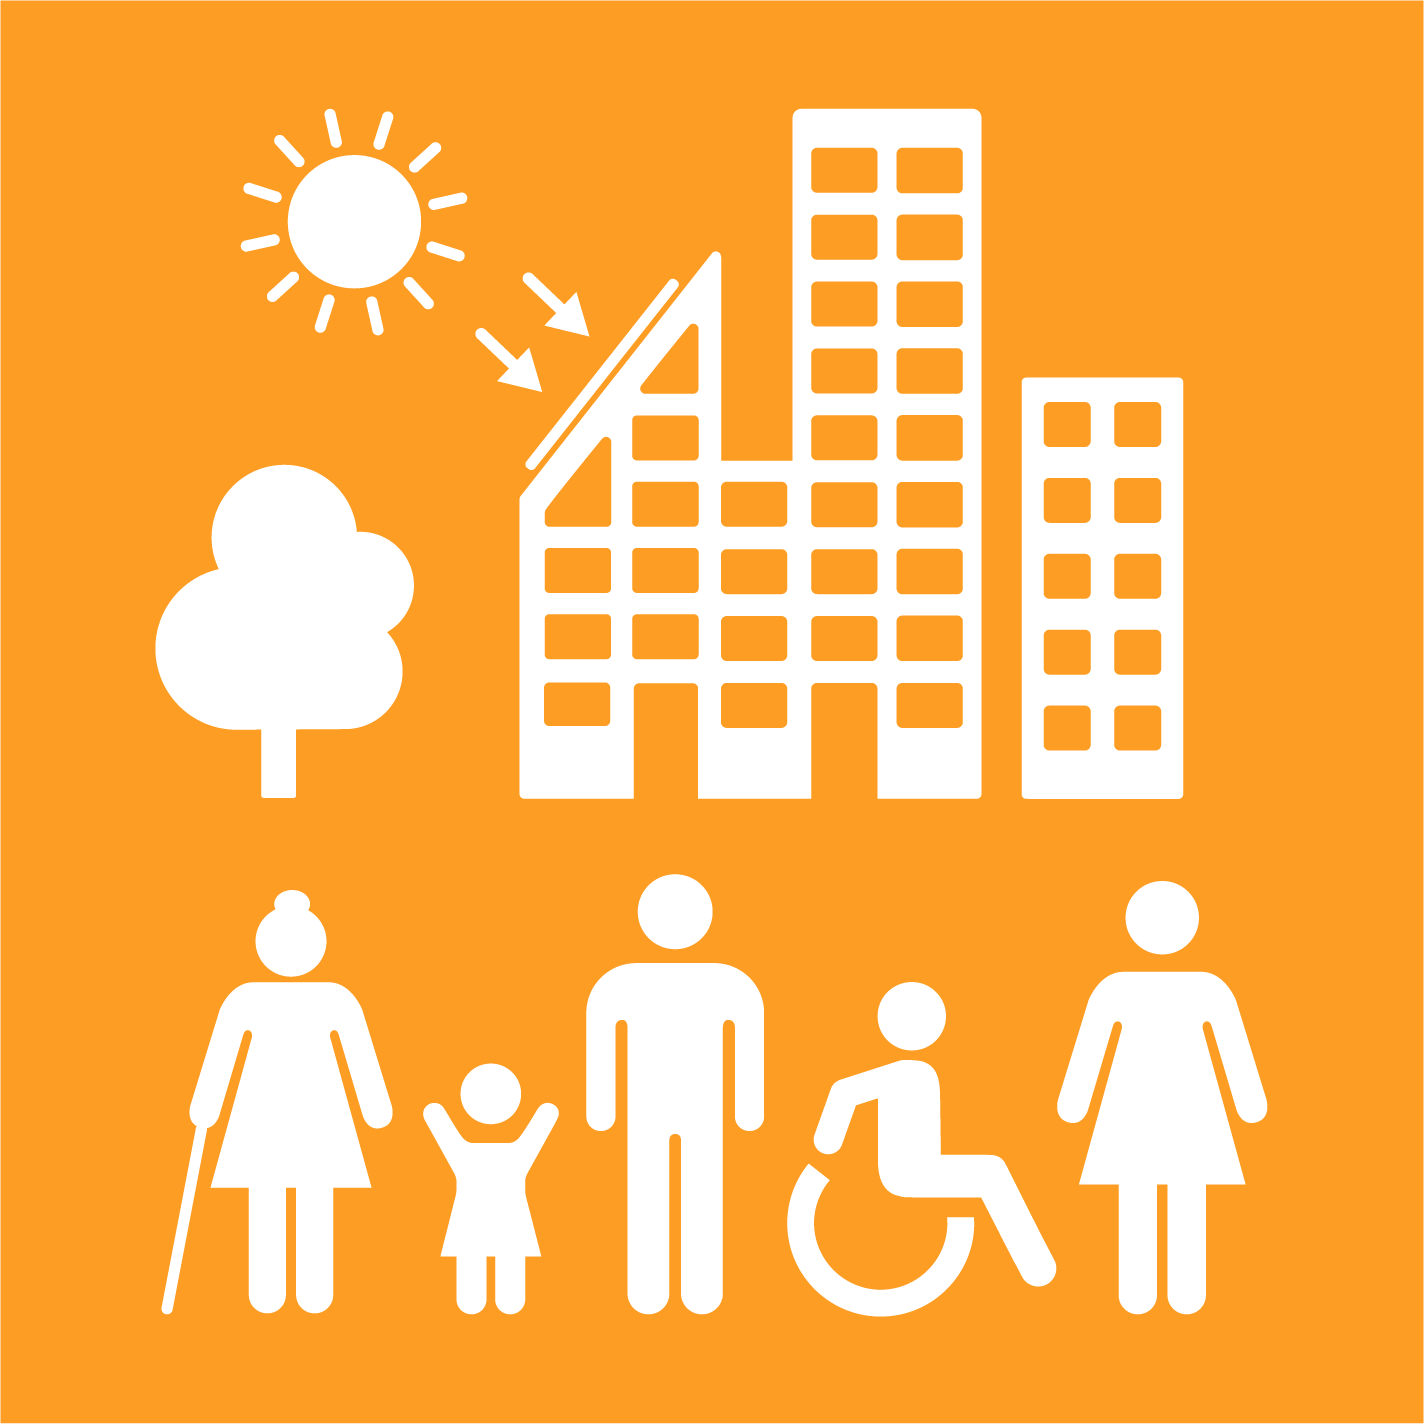 11.3 - Urbanización inclusiva y sostenible